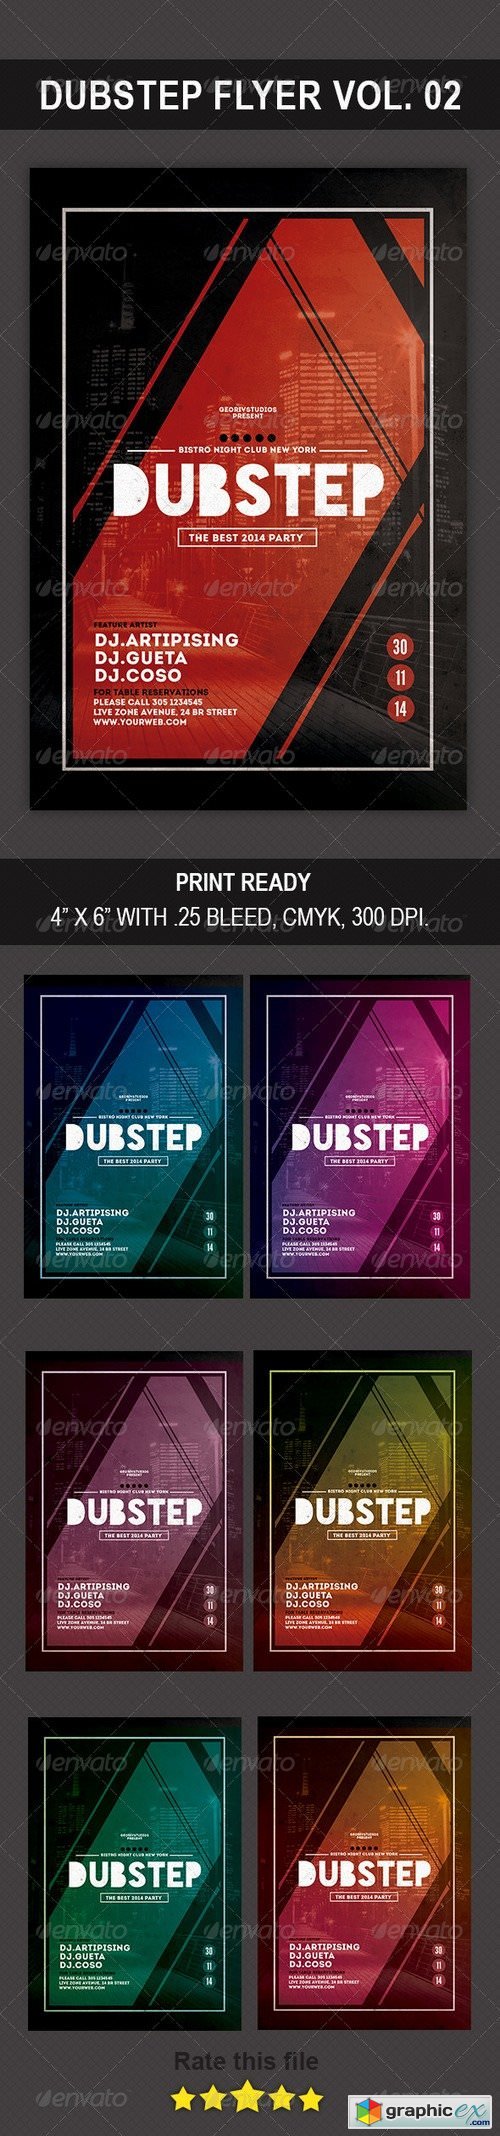 Dubstep Flyer Vol. 02